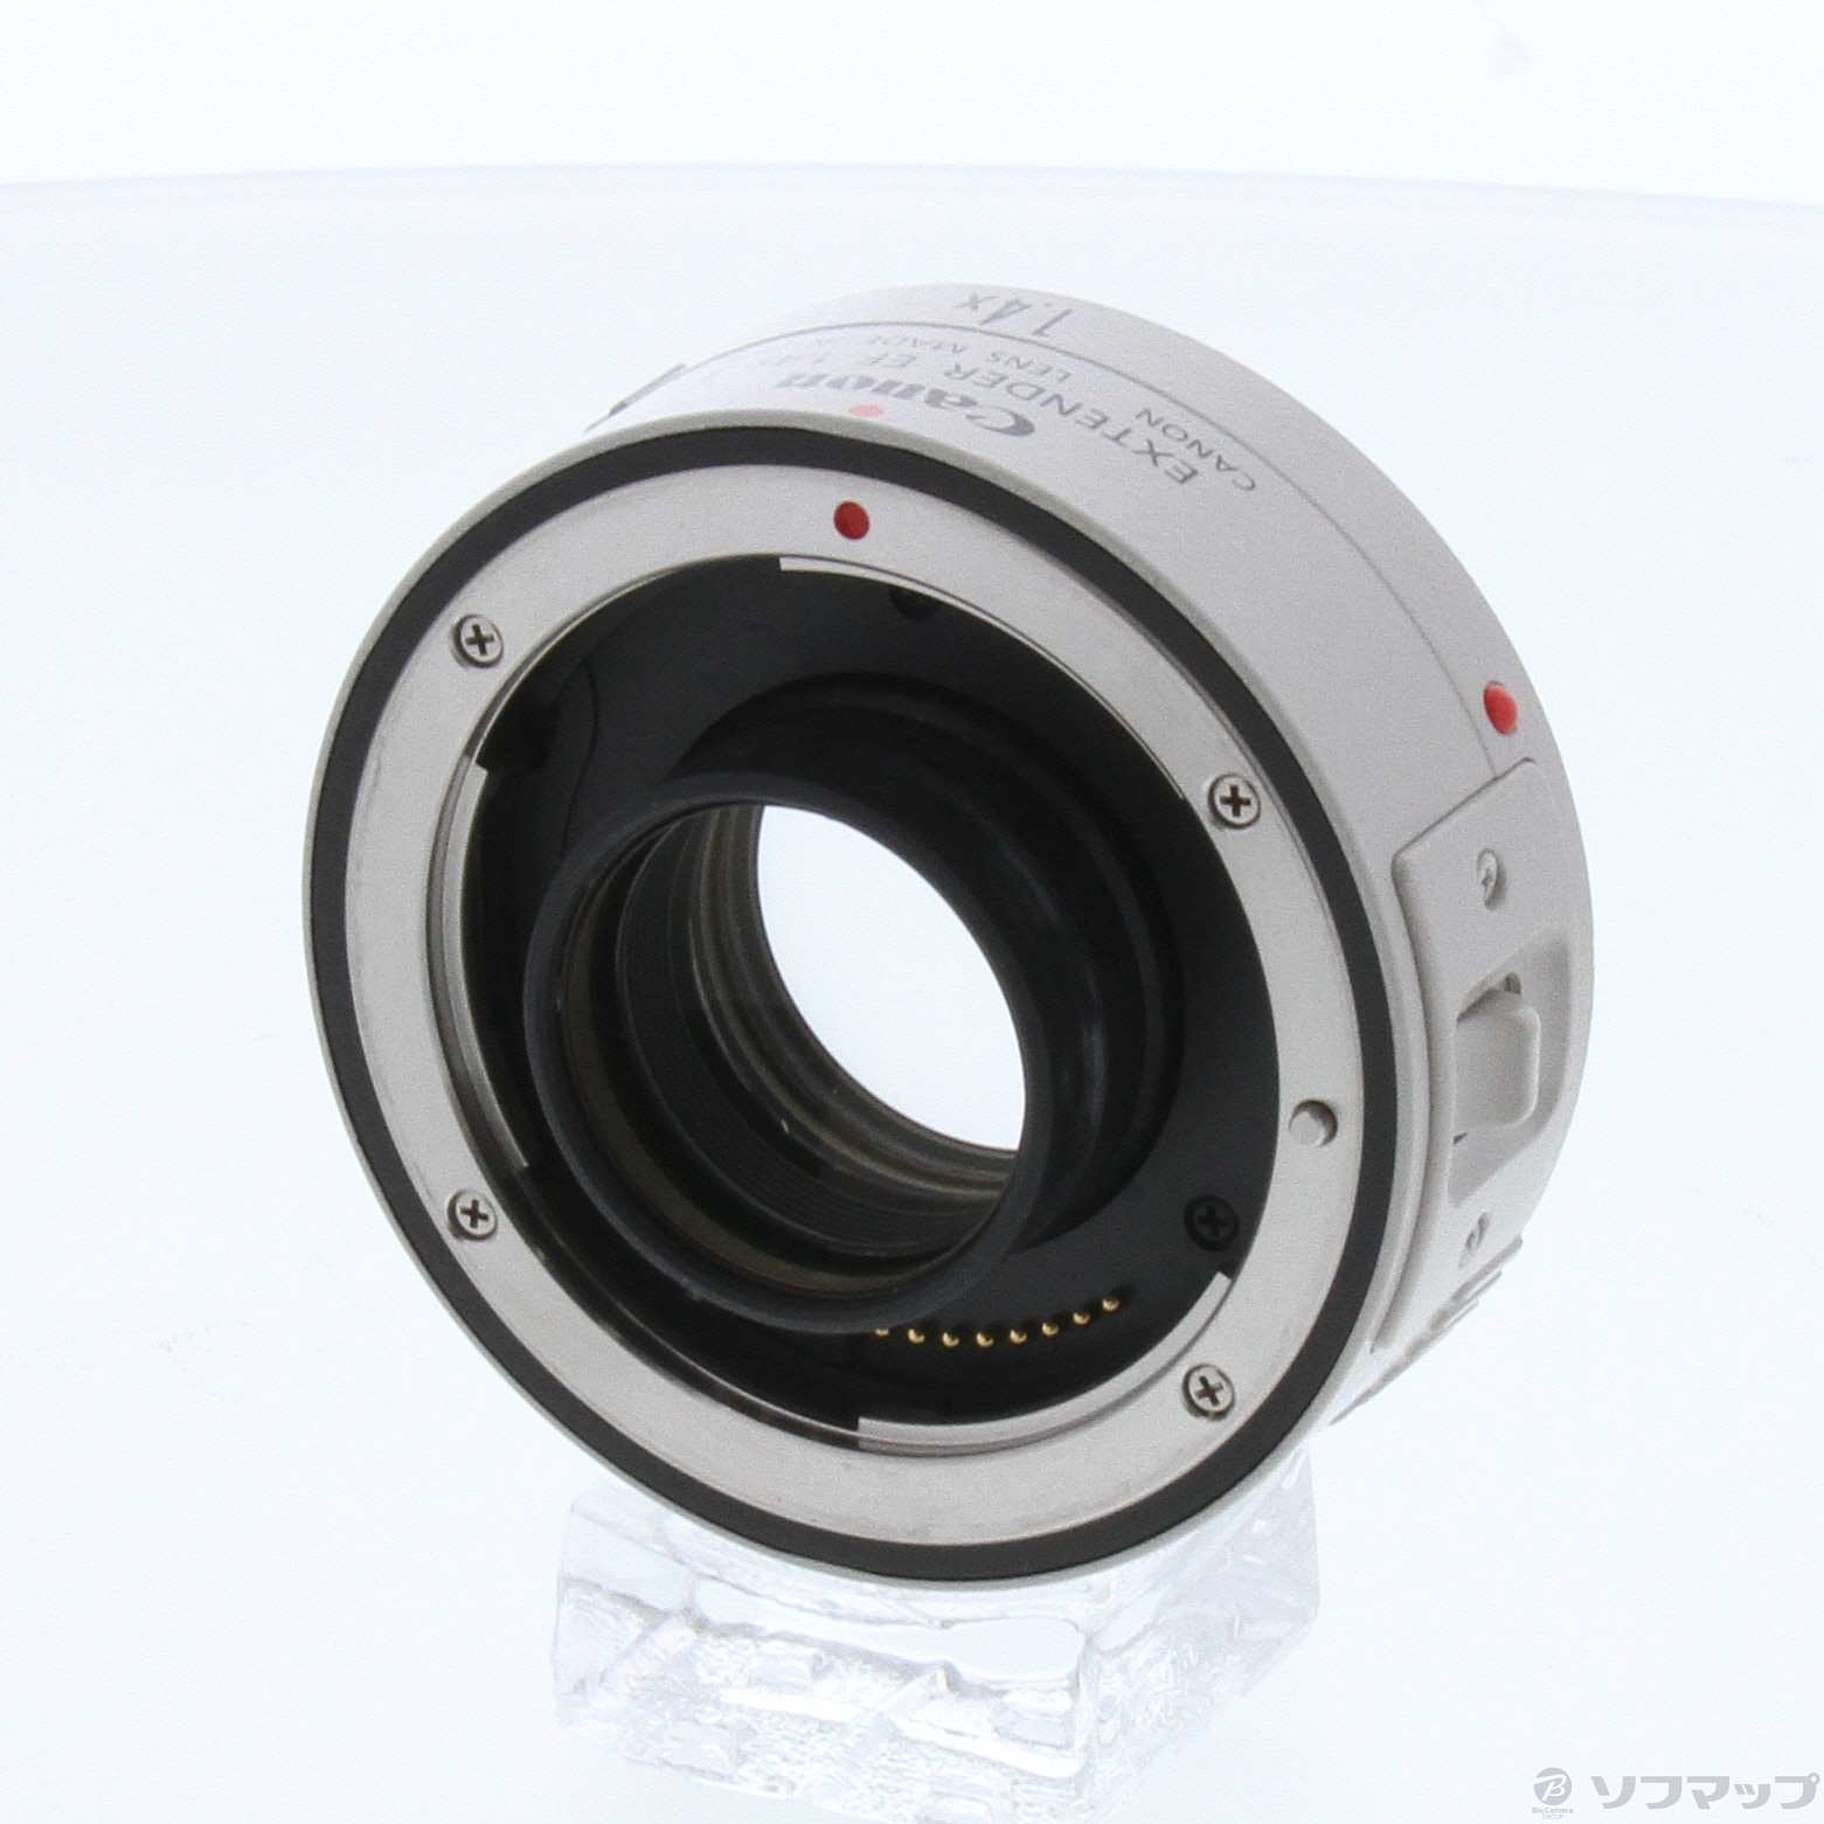 (中古)Canon Canon Extender EF 1.4xII (レンズ)(262-ud)